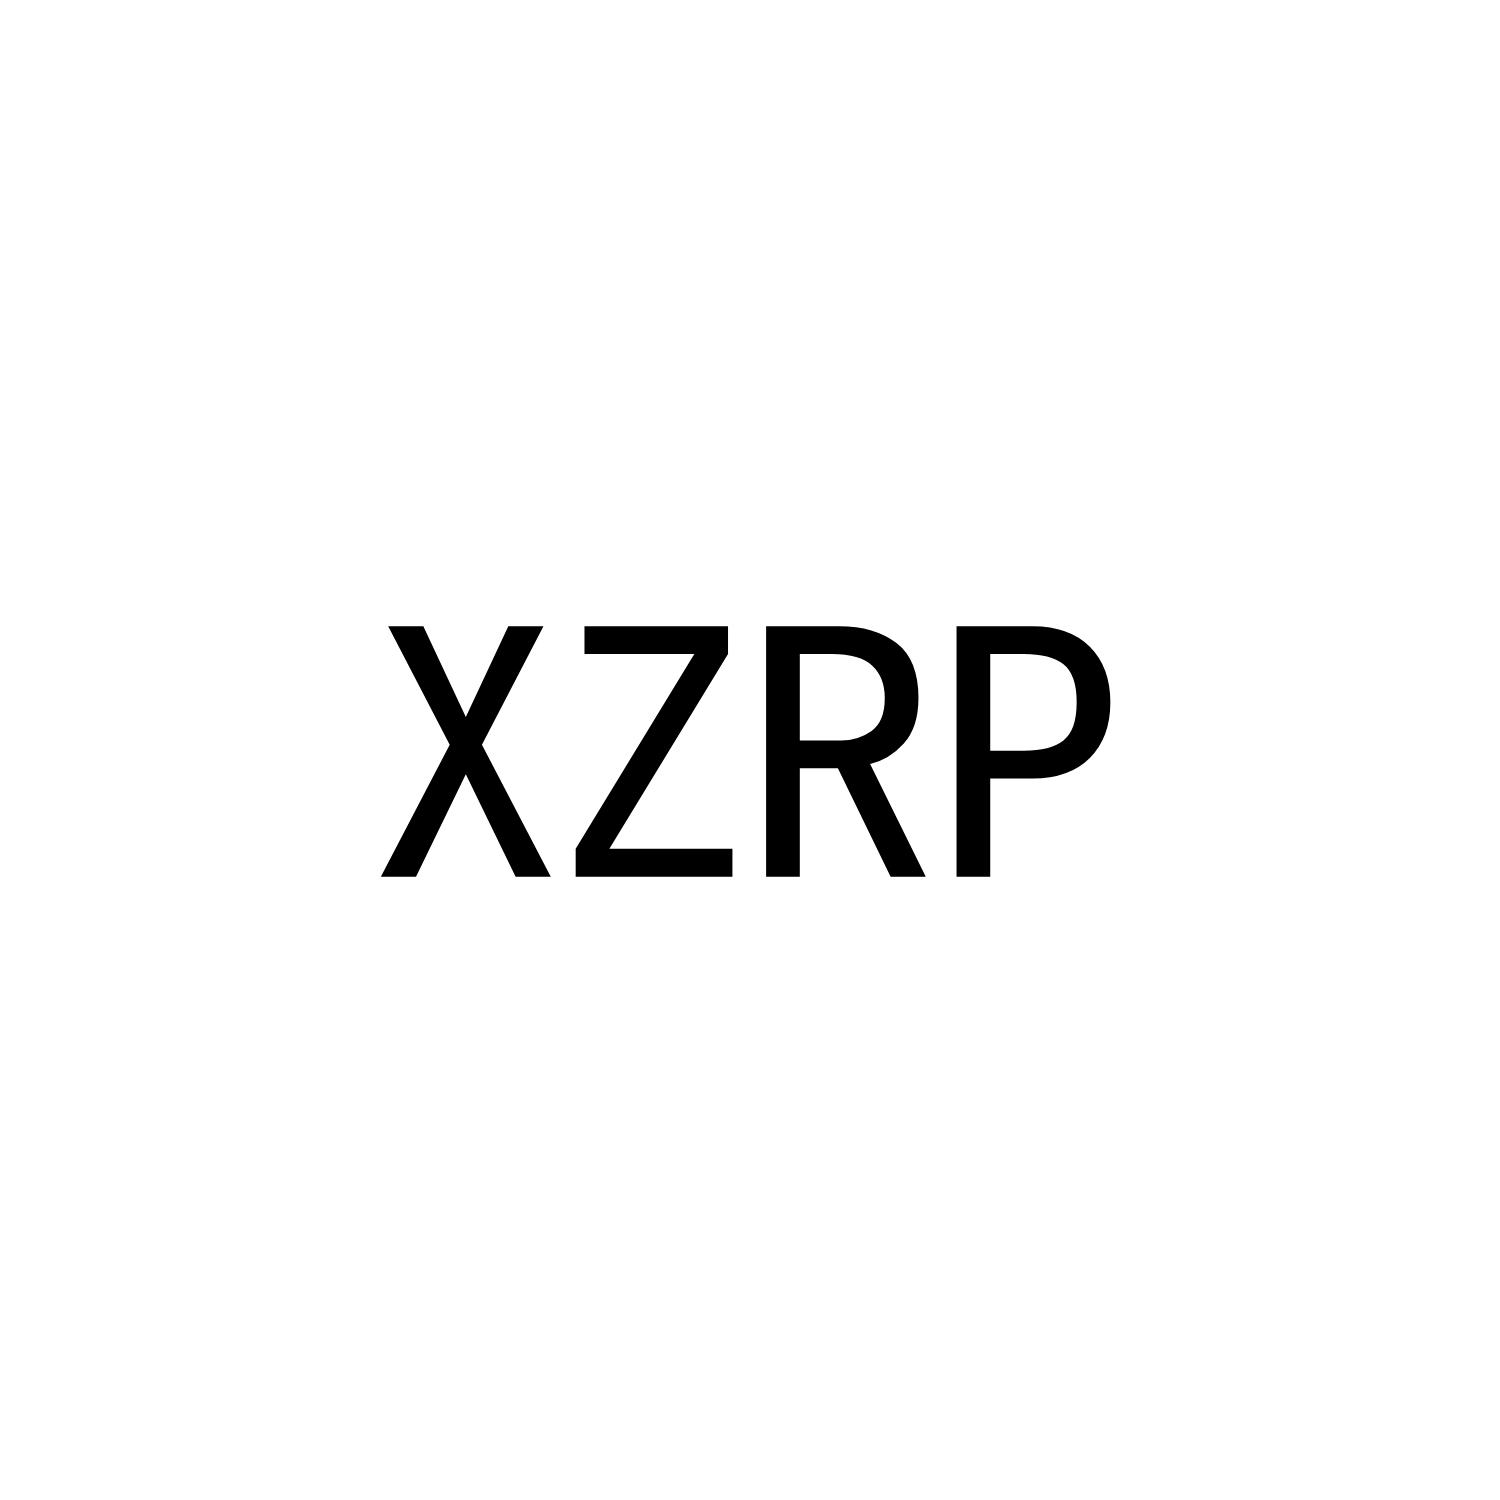 XZRP